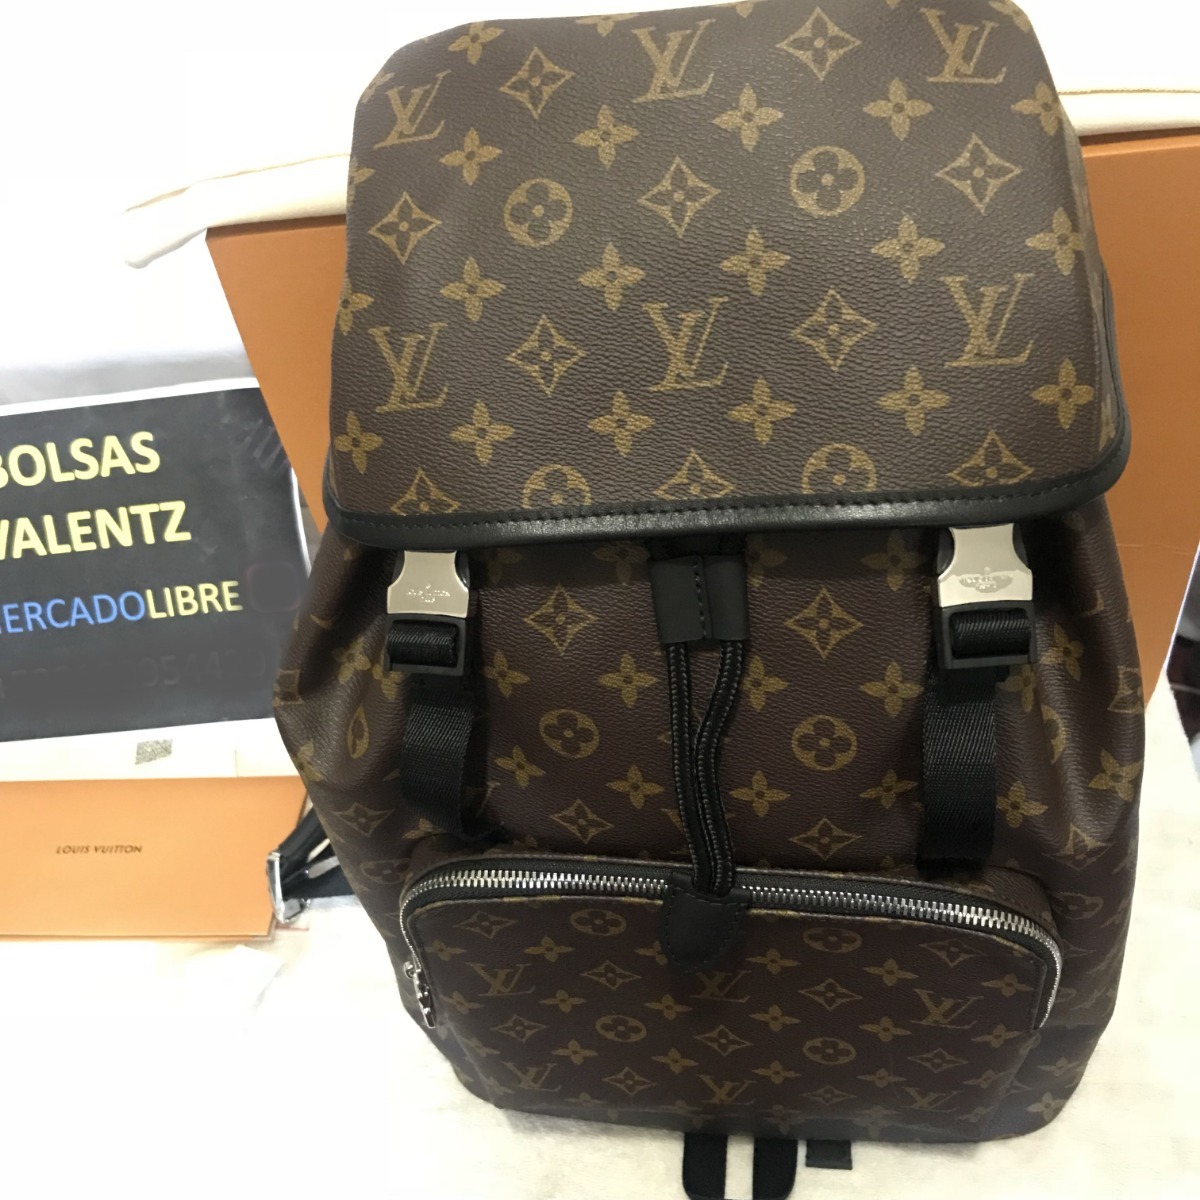 Mochila Louis Vuitton Zack Backpack Lv Monogram Factura Eur - $ 13,299.00 en Mercado Libre